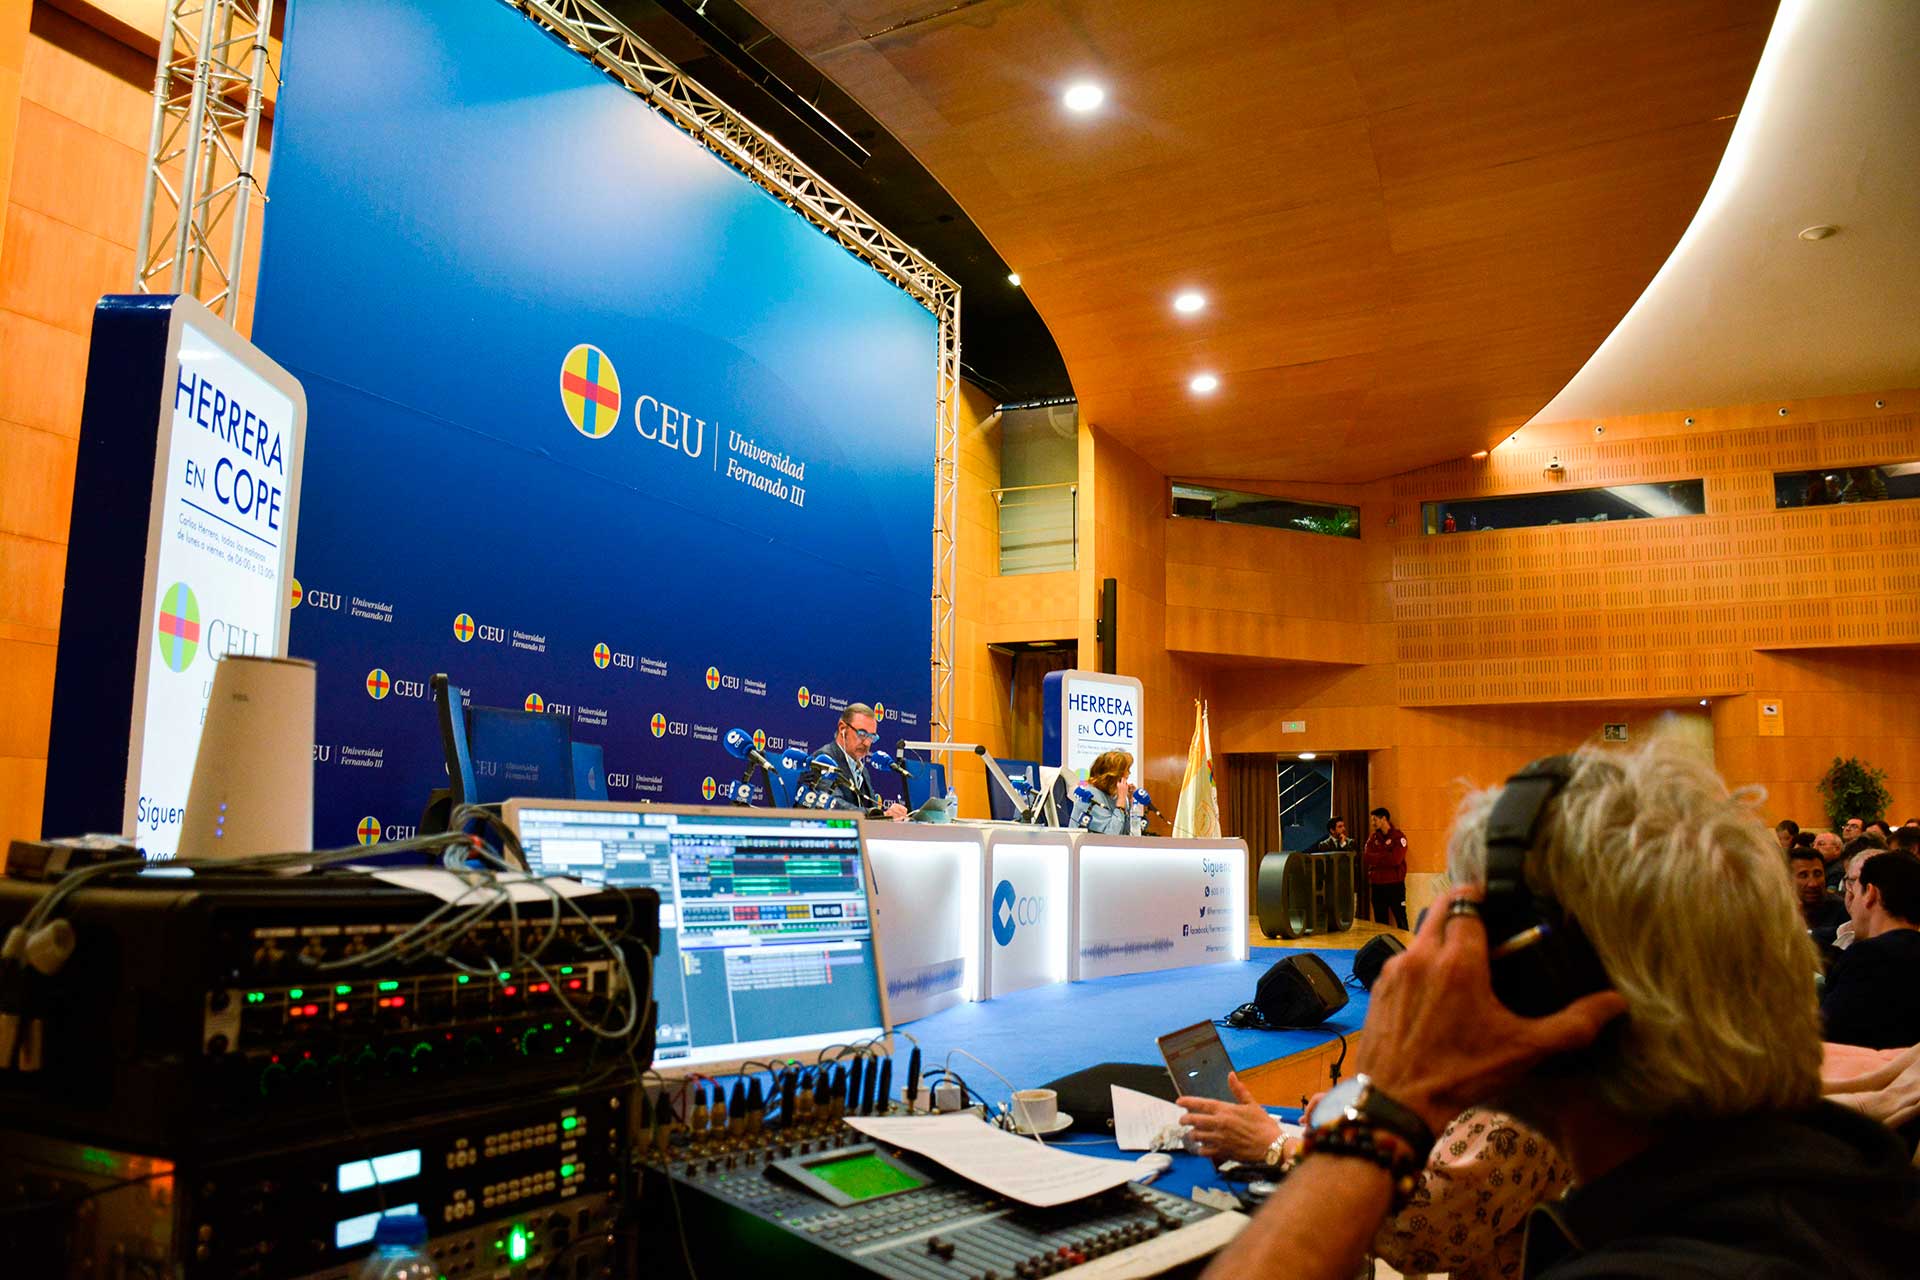 Técnicos de radio durante la retransmisión del programa Herrera en COPE